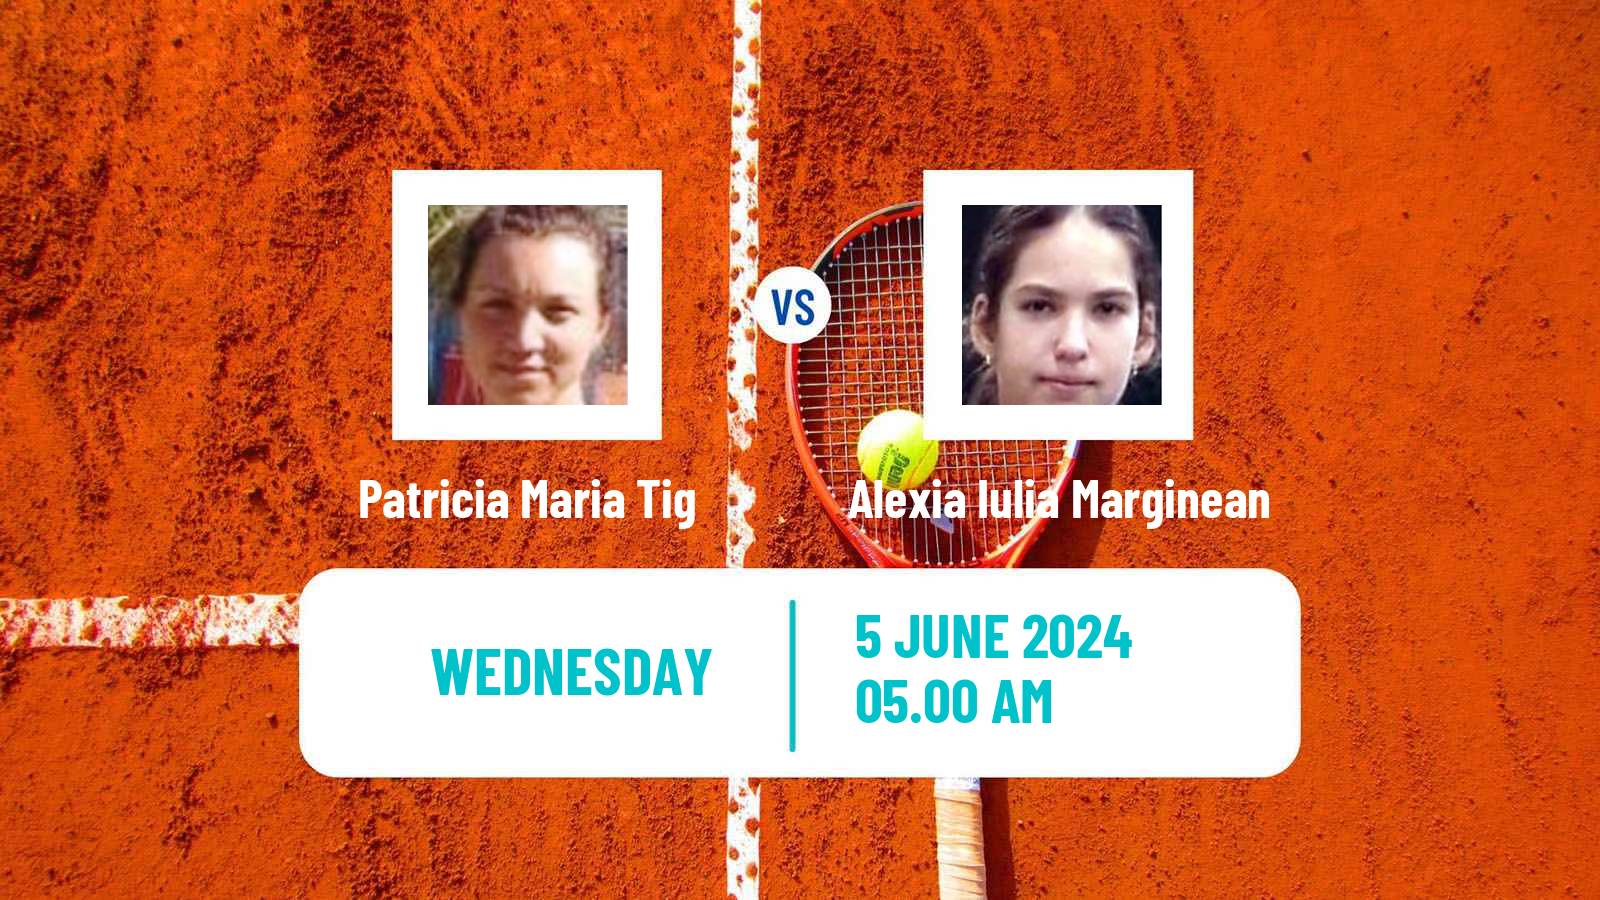 Tennis ITF W15 Focsani Women Patricia Maria Tig - Alexia Iulia Marginean